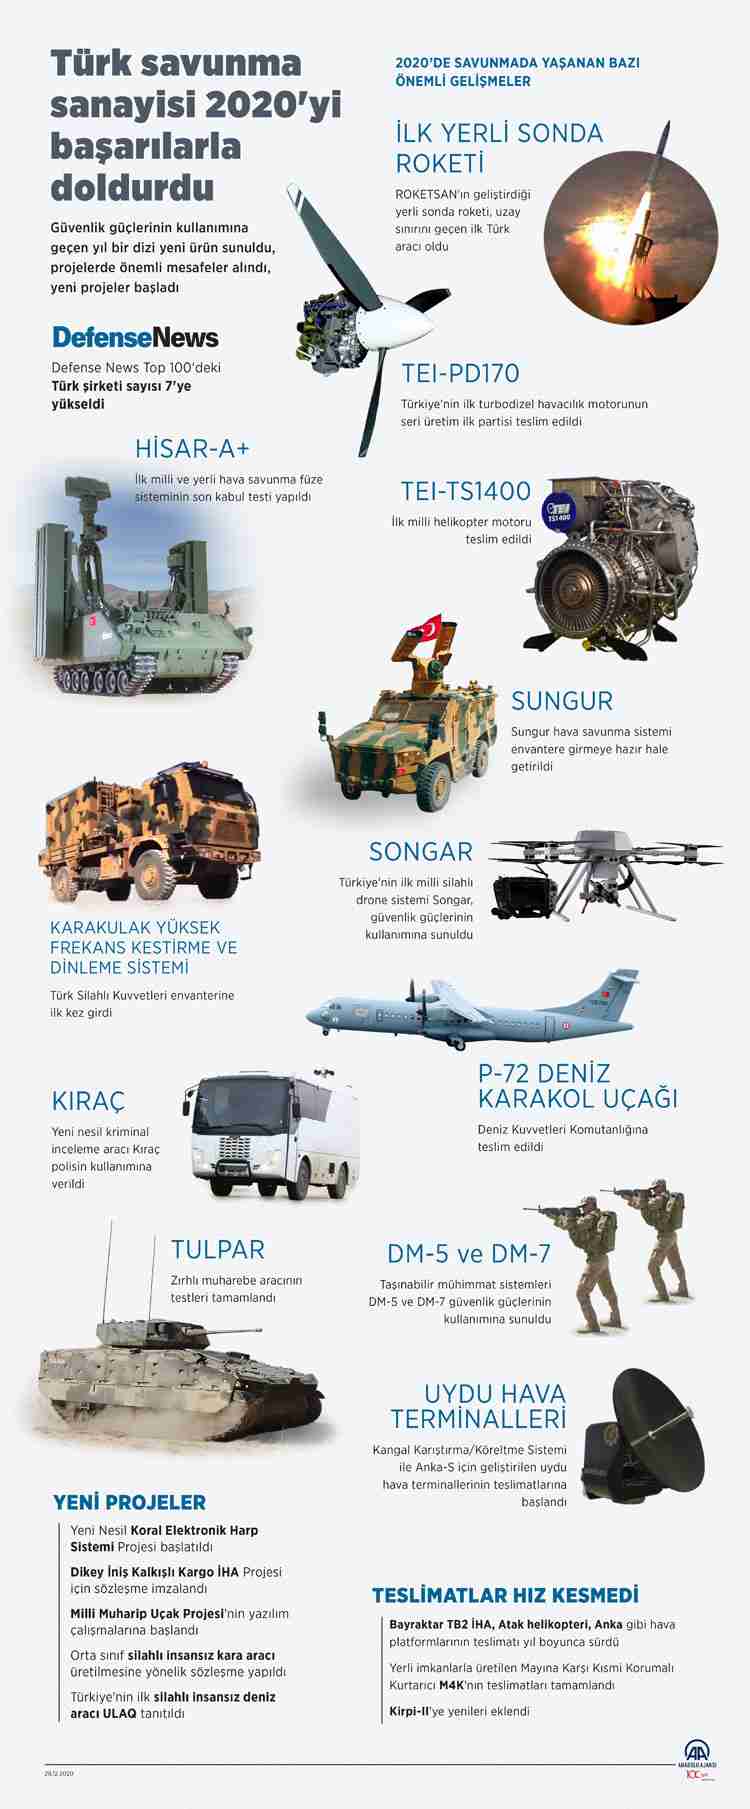 Türk savunma sanayii 2020'de de önemli başarılara imza attı